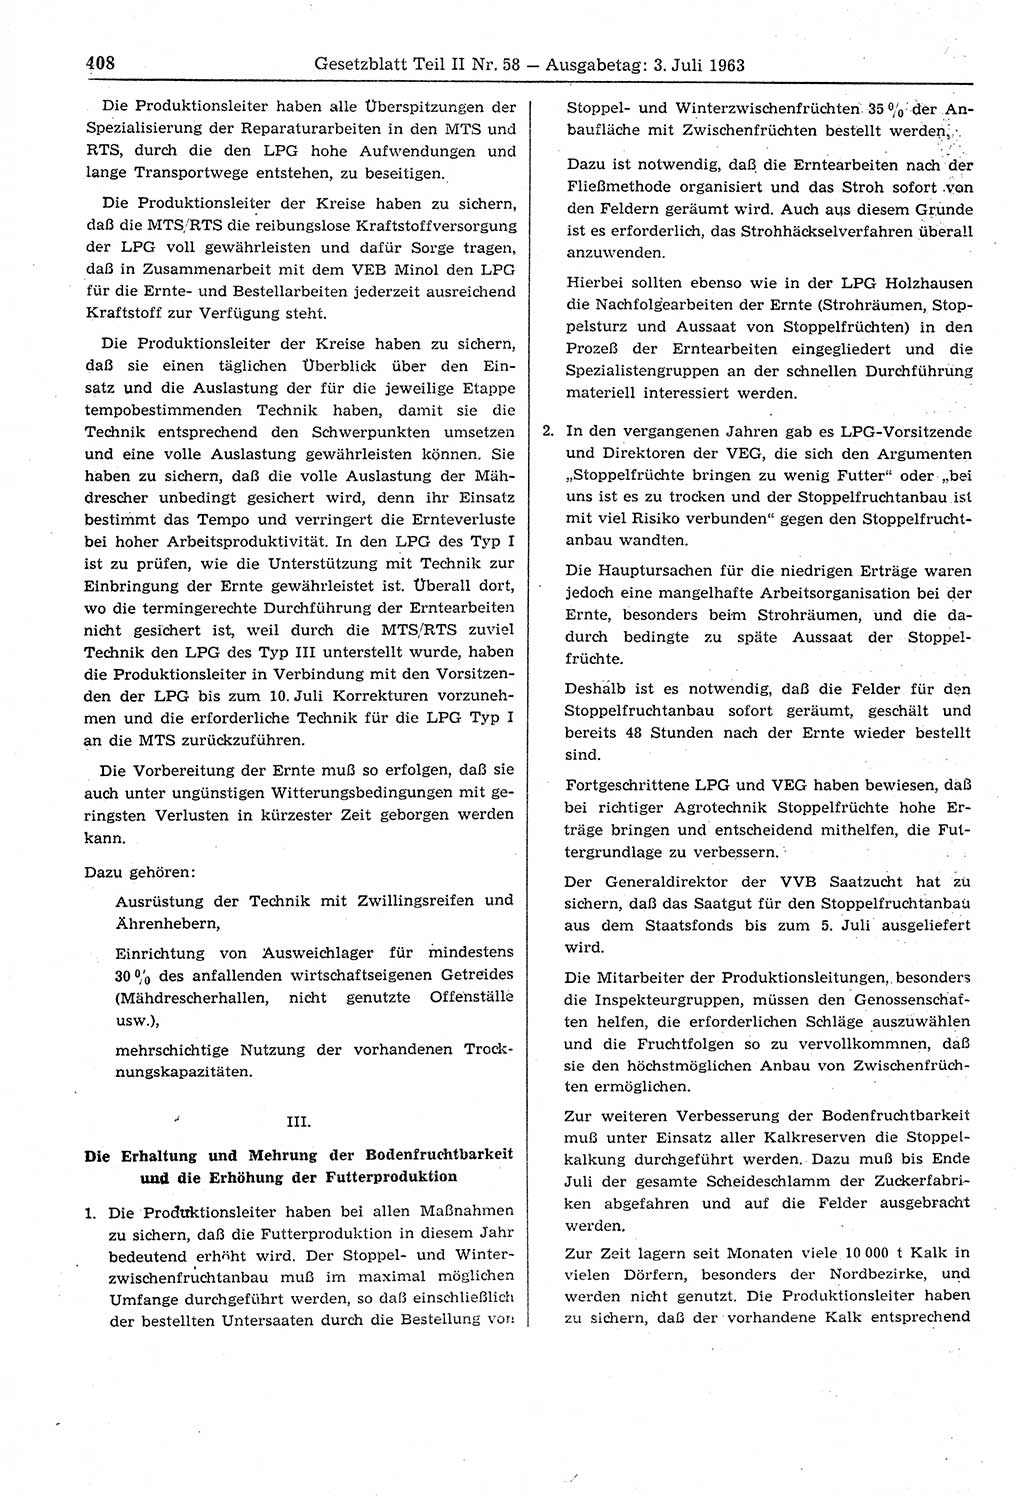 Gesetzblatt (GBl.) der Deutschen Demokratischen Republik (DDR) Teil ⅠⅠ 1963, Seite 408 (GBl. DDR ⅠⅠ 1963, S. 408)